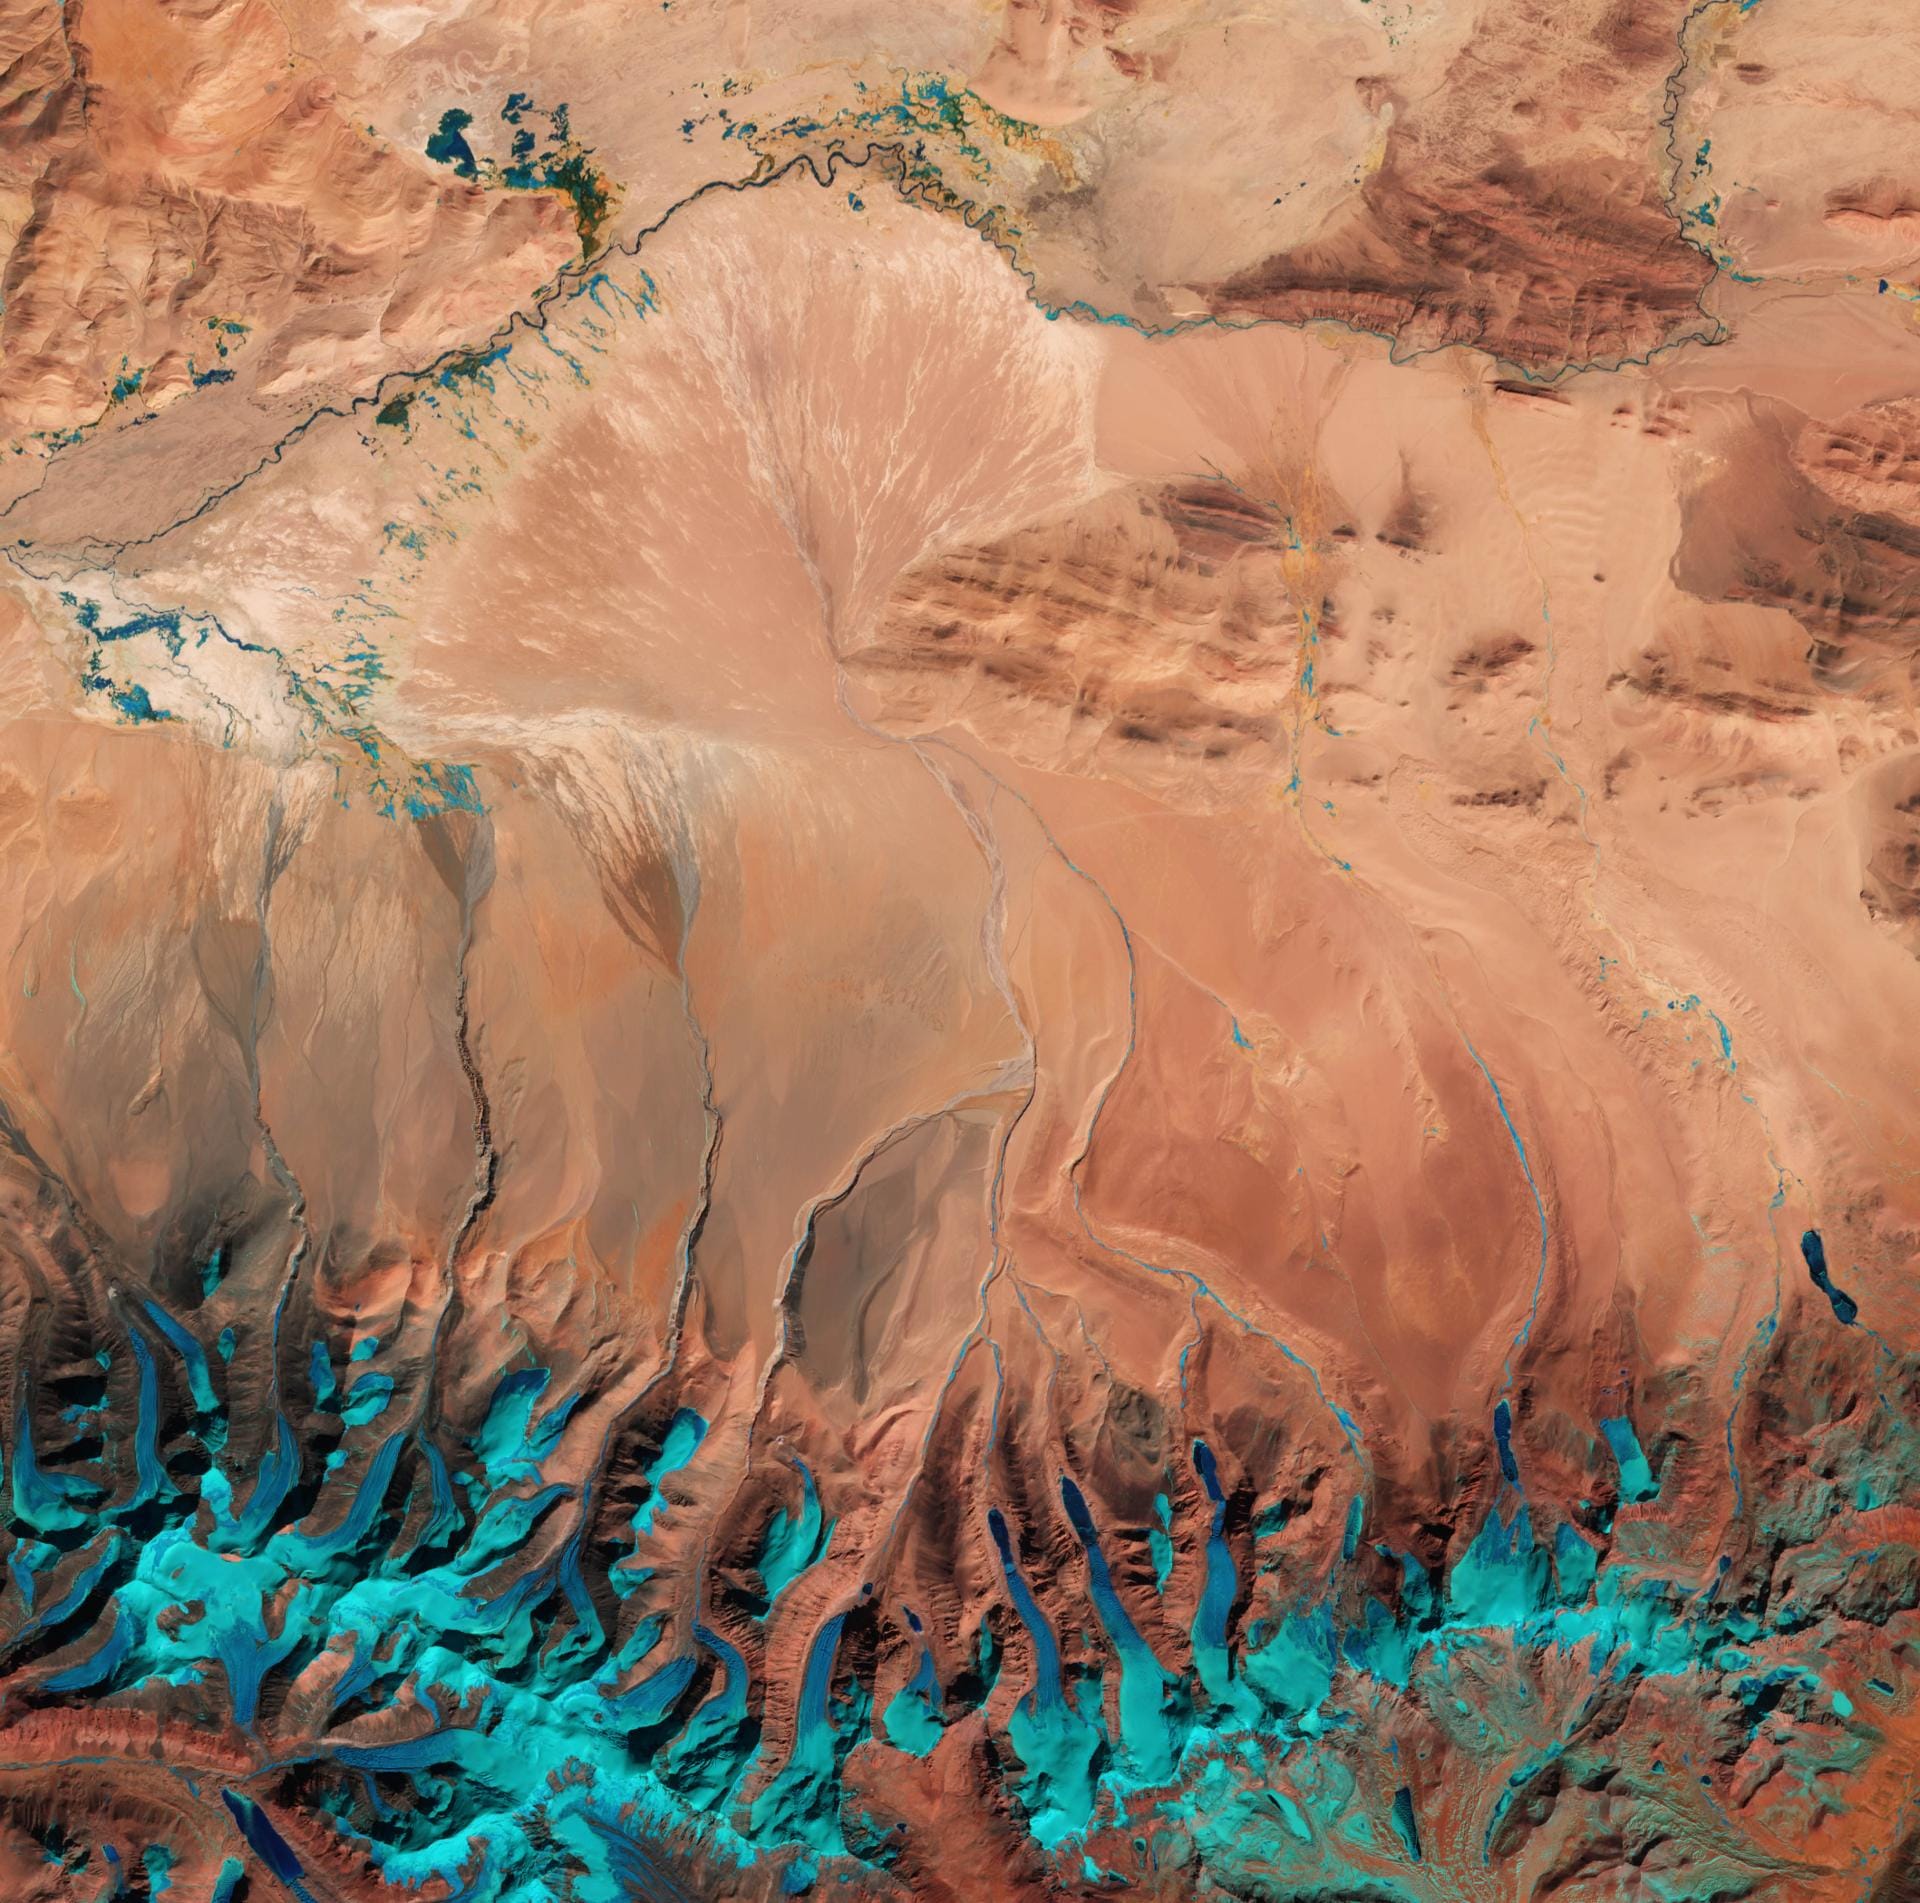 Dieses Gebirge kennen Sie alle.Das Satellitenbild zeigt das Tibetanische Hochland und dessen Grenze zu Nepal und dem indischen Staat Sikkim. Das Hochland entstand vor 55 Millionen Jahren, als sich zwei Kontinentalplaten aufeinanderschoben. Es ist heute das größte Hochland der Welt.